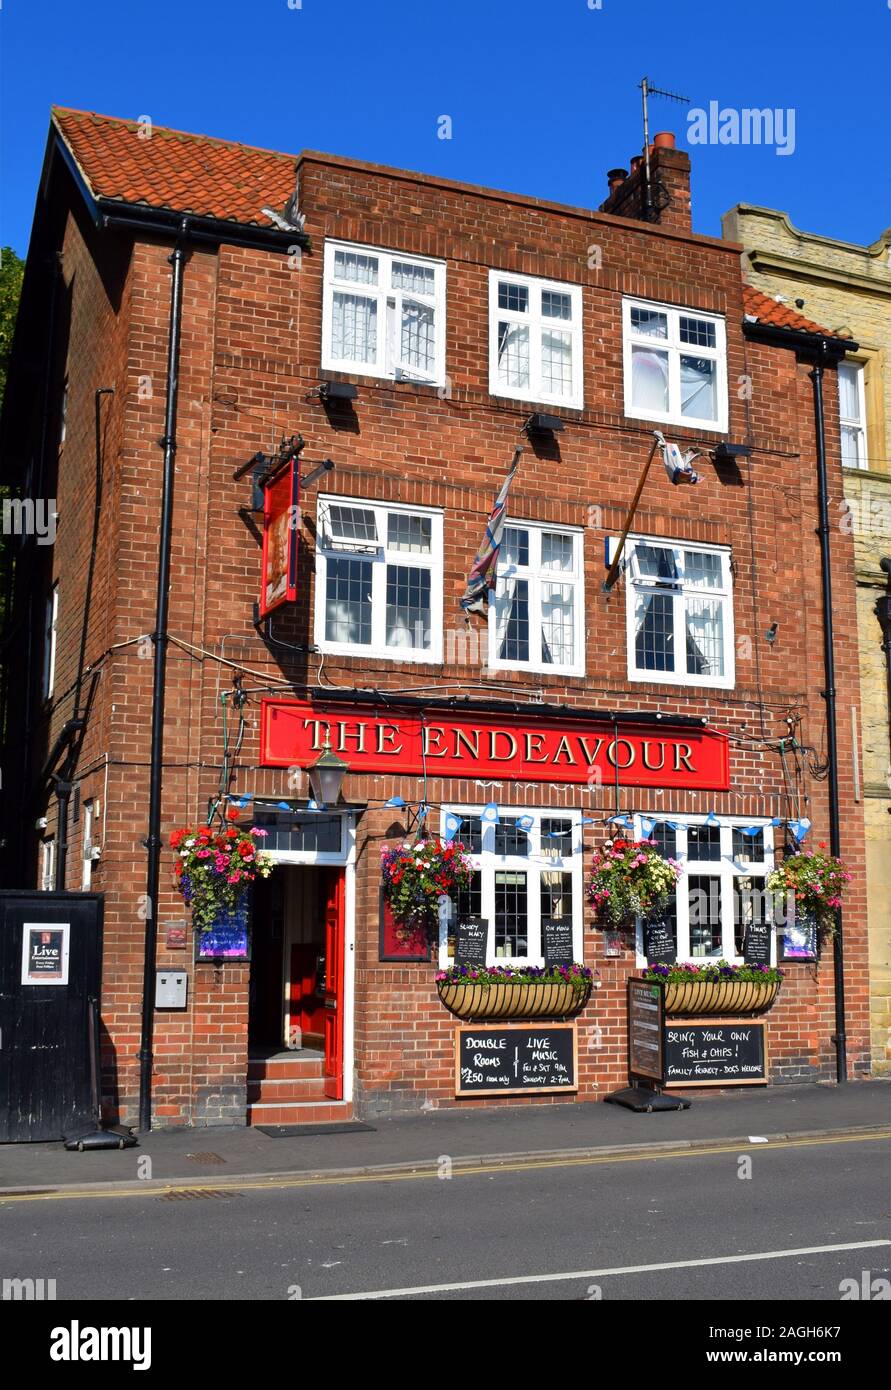 Il pub Endeavour, (precedentemente The Imperial) a Whitby, North Yorkshire, Inghilterra. (Come nel luglio 2017). Insegne offrono musica dal vivo, alloggio, camere, famiglia e cani, e 'portare il proprio patatine'. Foto Stock